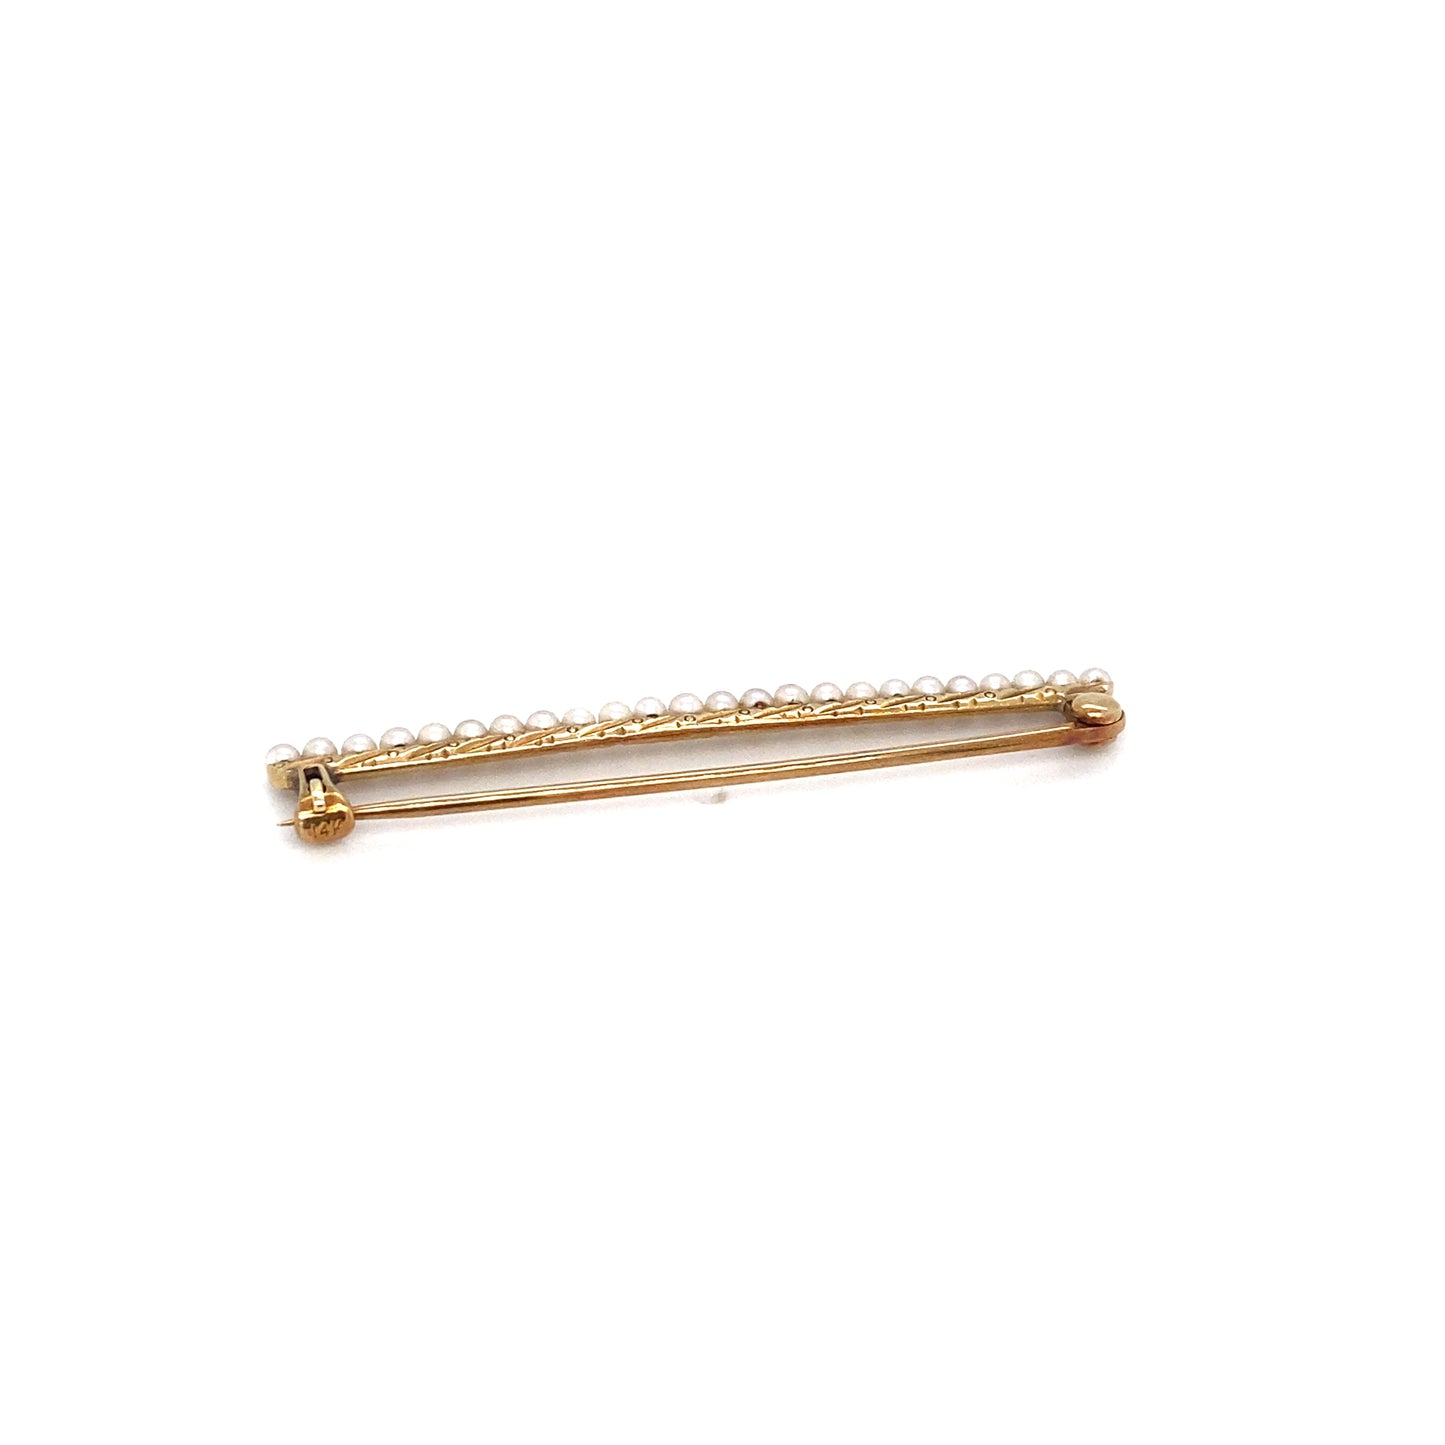 Circa 1920s Seed Pearl Bar Pin in 14K Gold